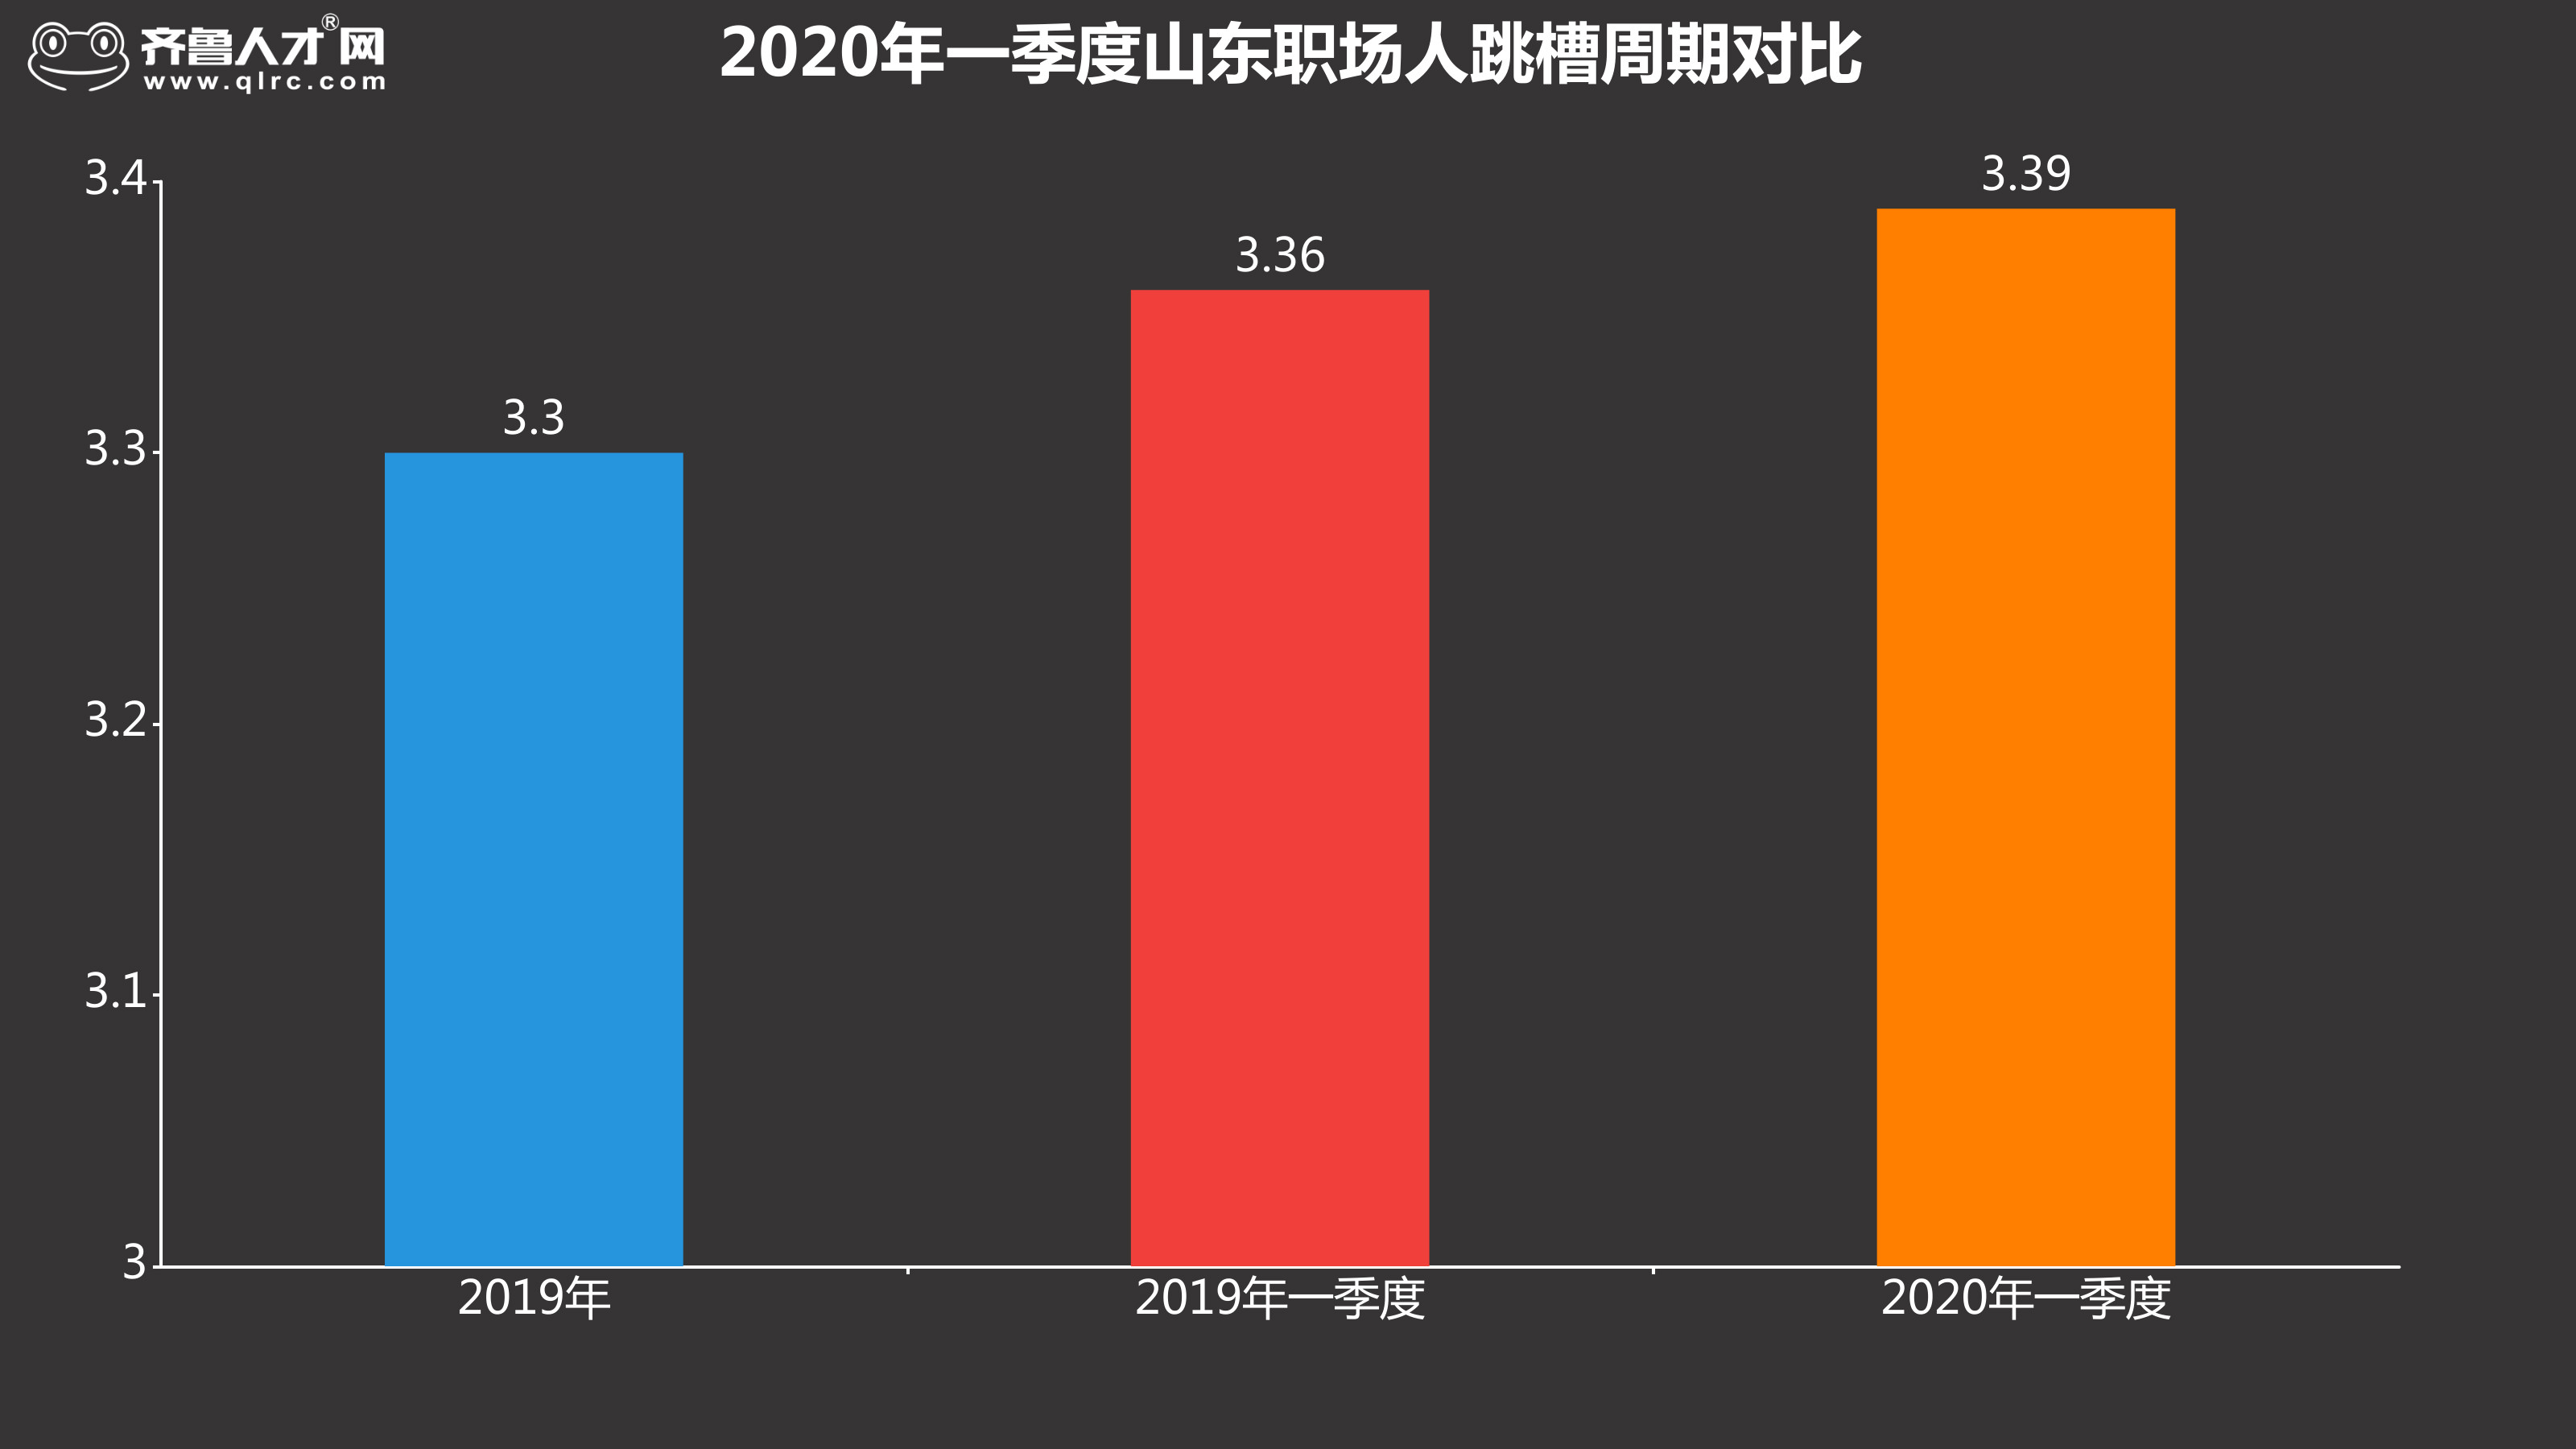 齐鲁人才网-2020年一季度跳槽数据图1.jpg